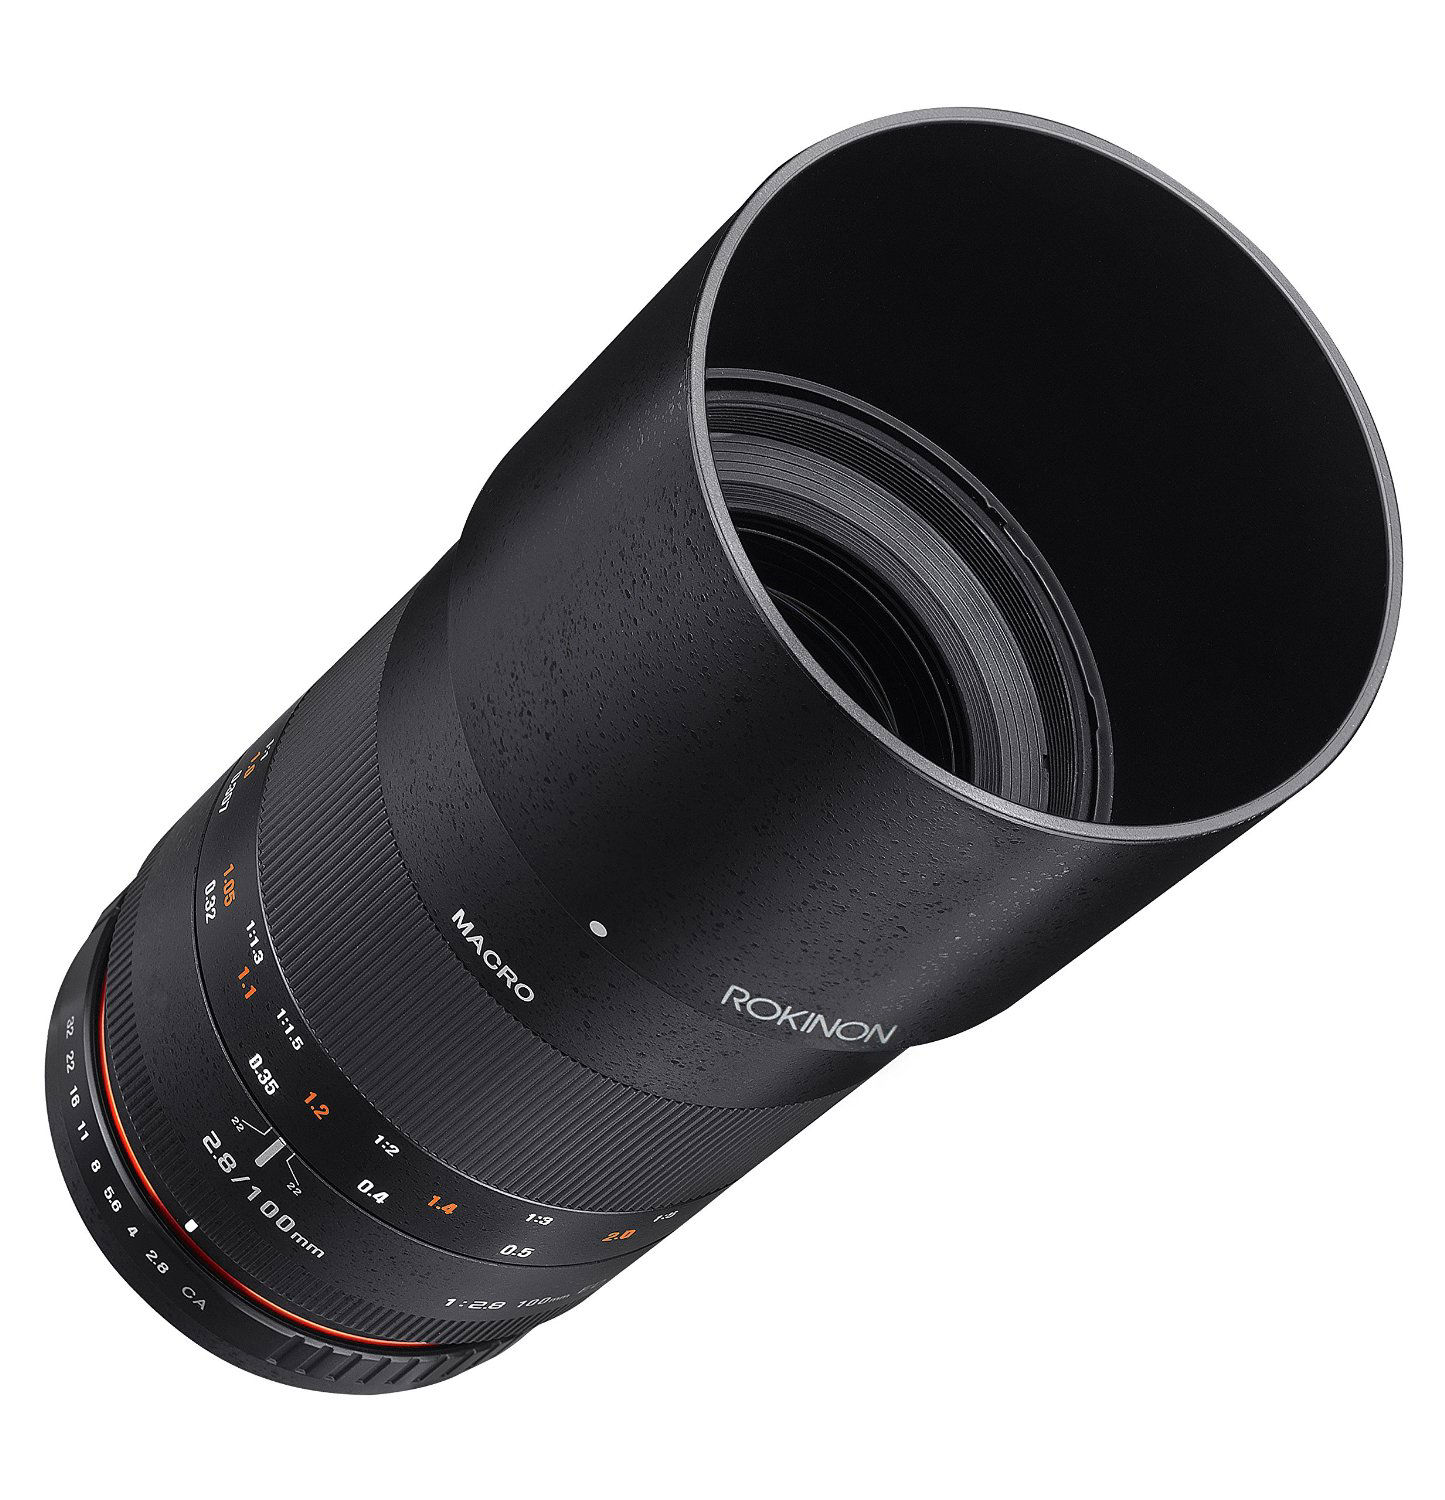 Rokinon 100mm f/2.8 Macro Lens